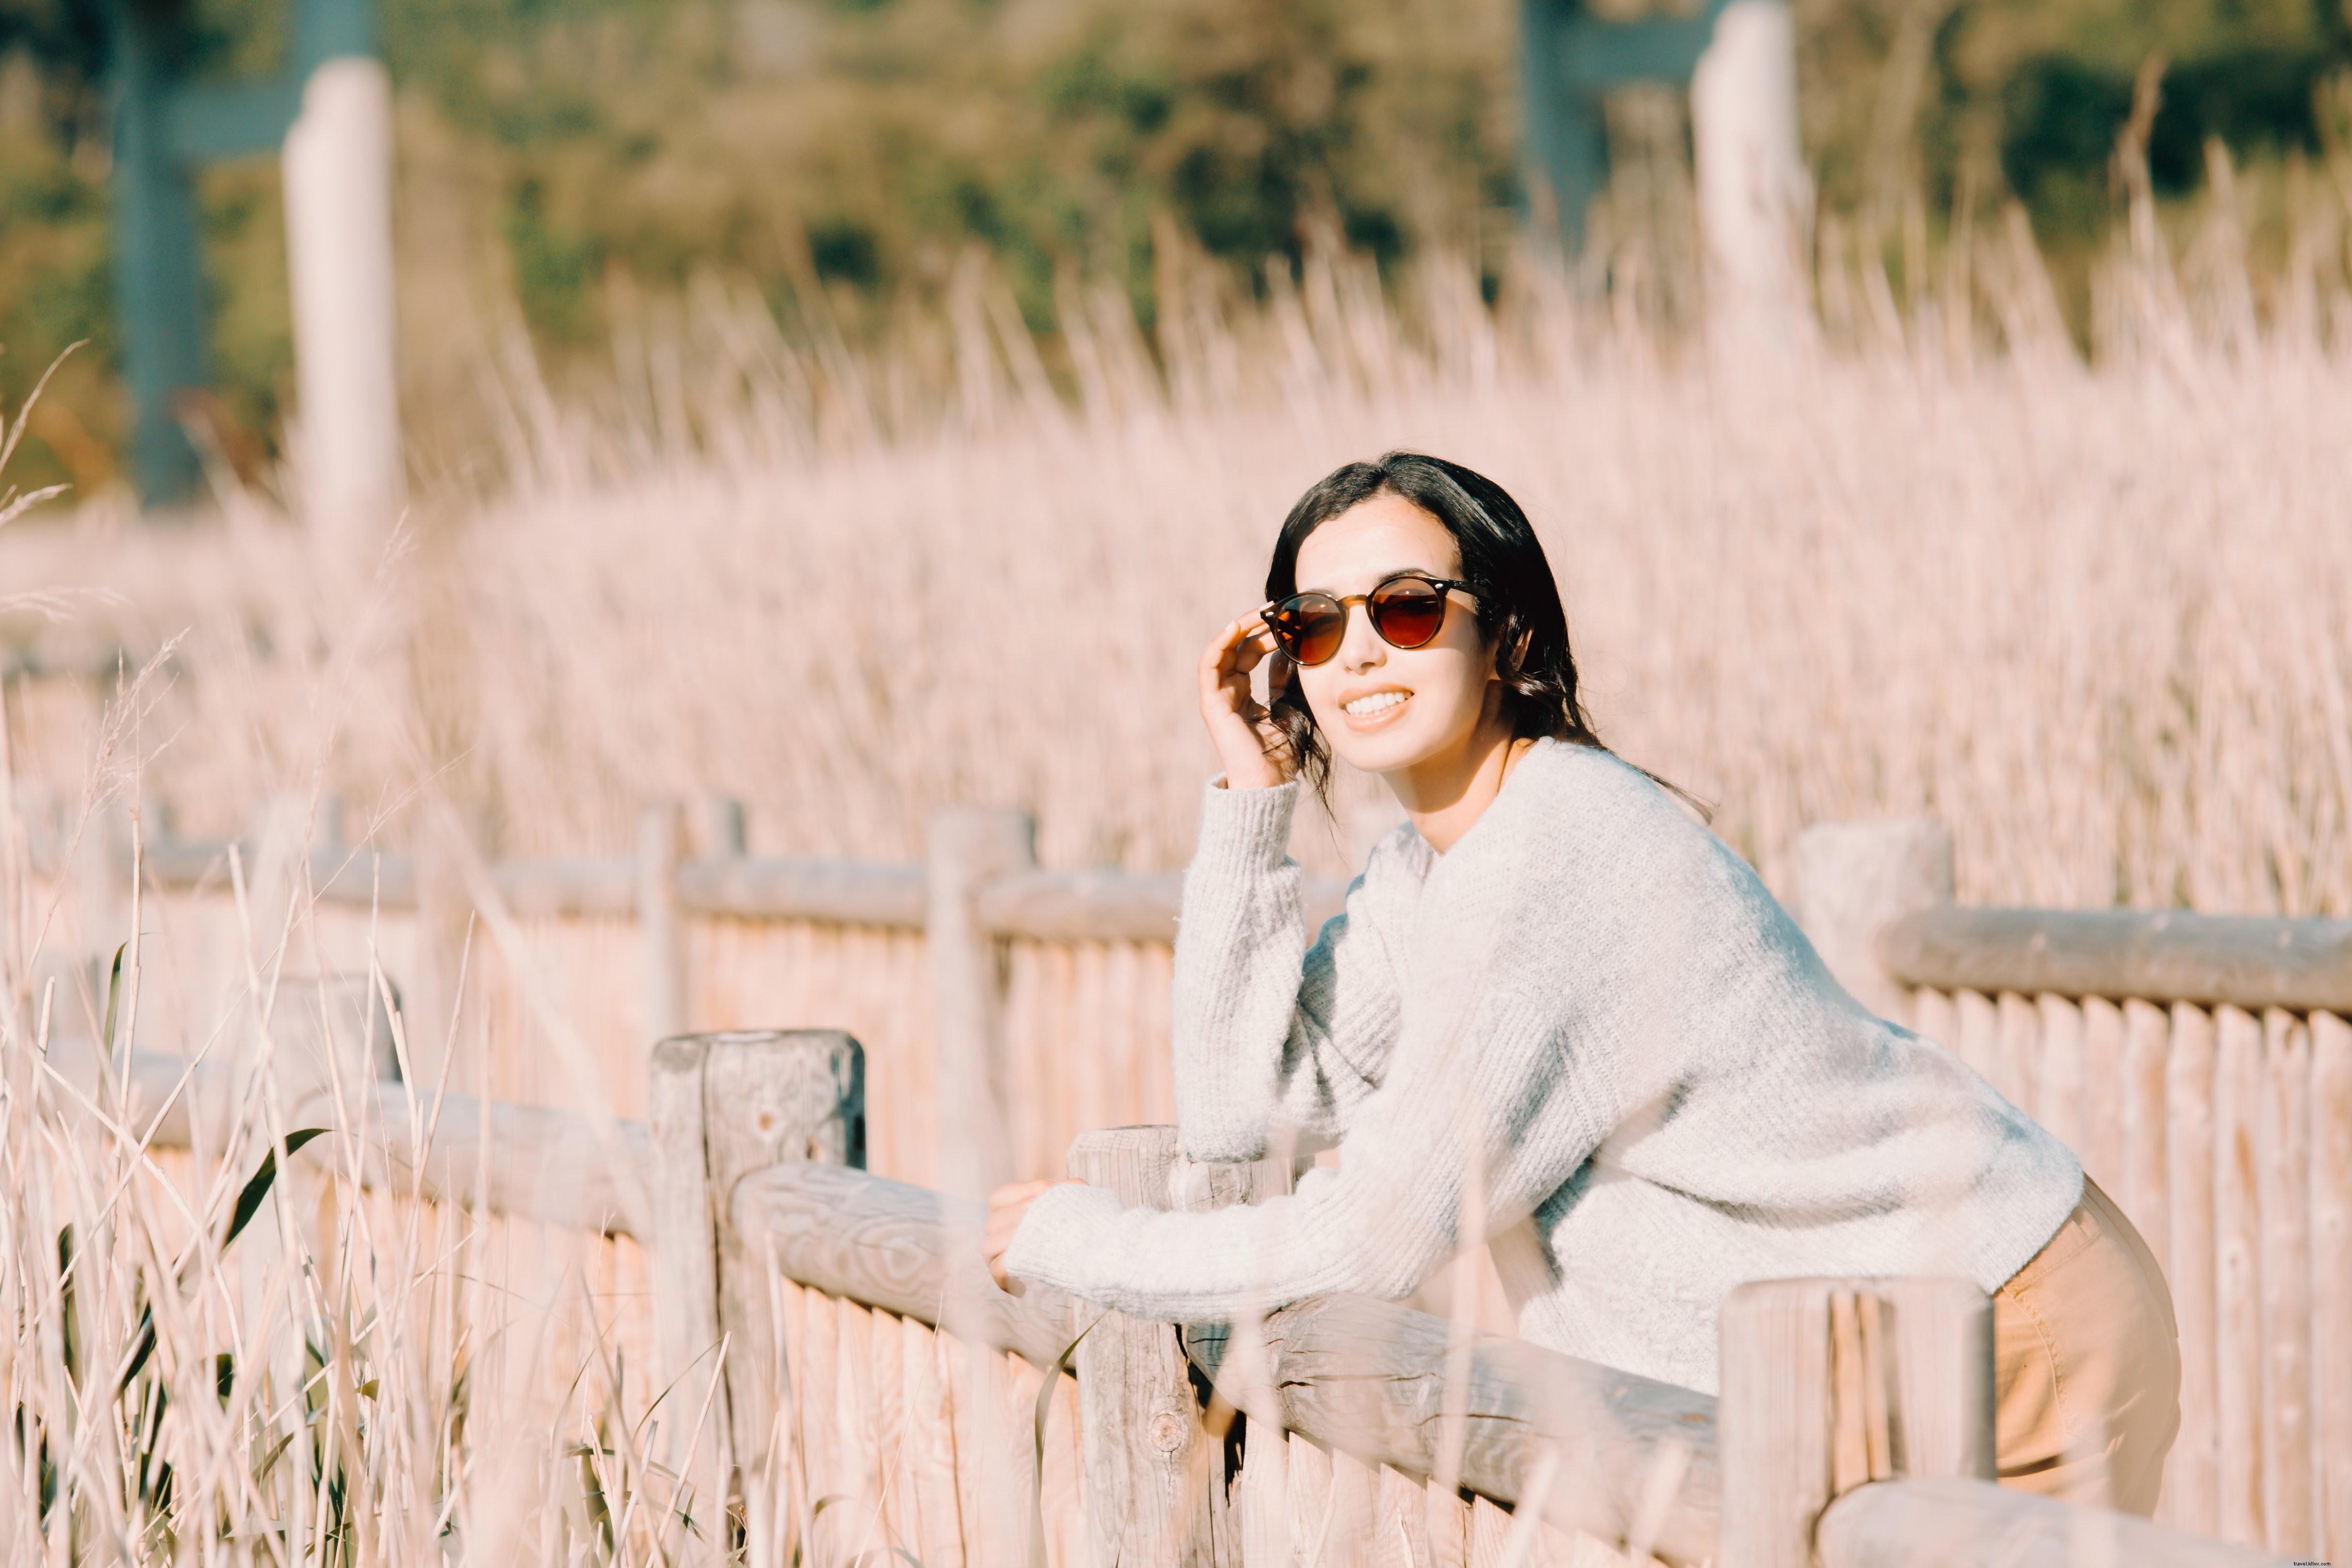 La donna con gli occhiali da sole si appoggia a una staccionata di legno Foto 